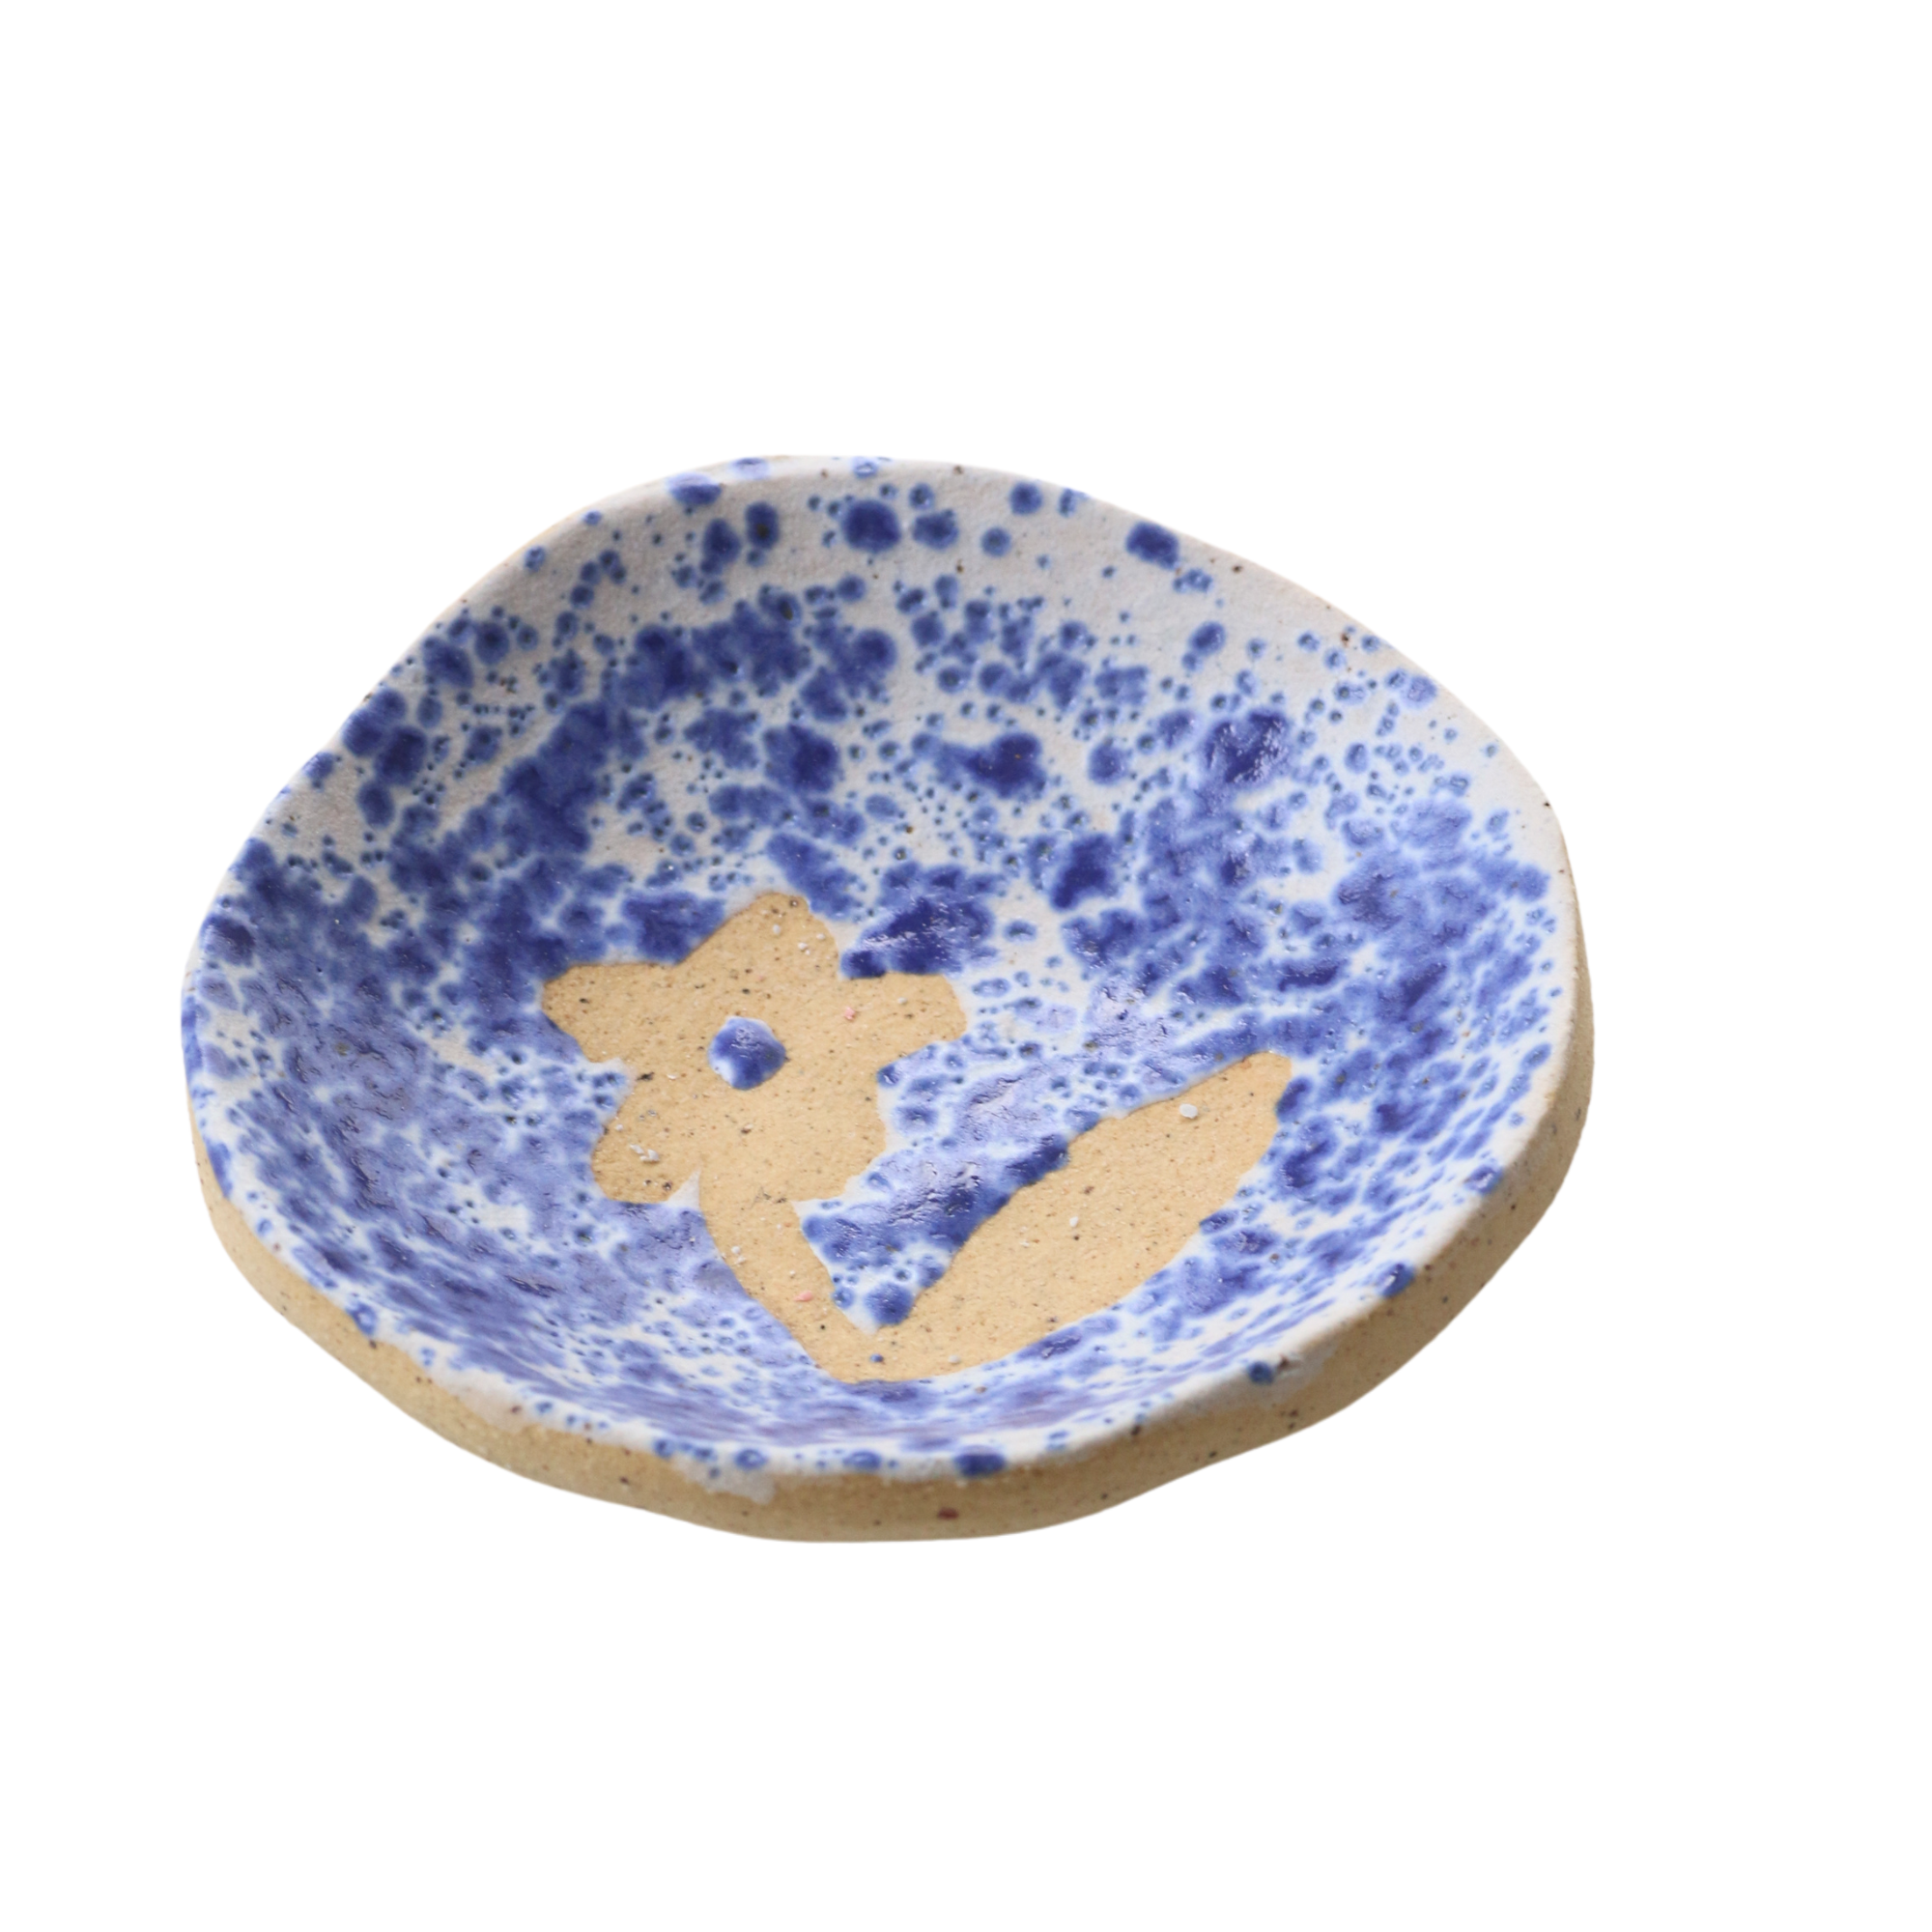 Dish No. 21 - Crabapple Design Ceramic Dish